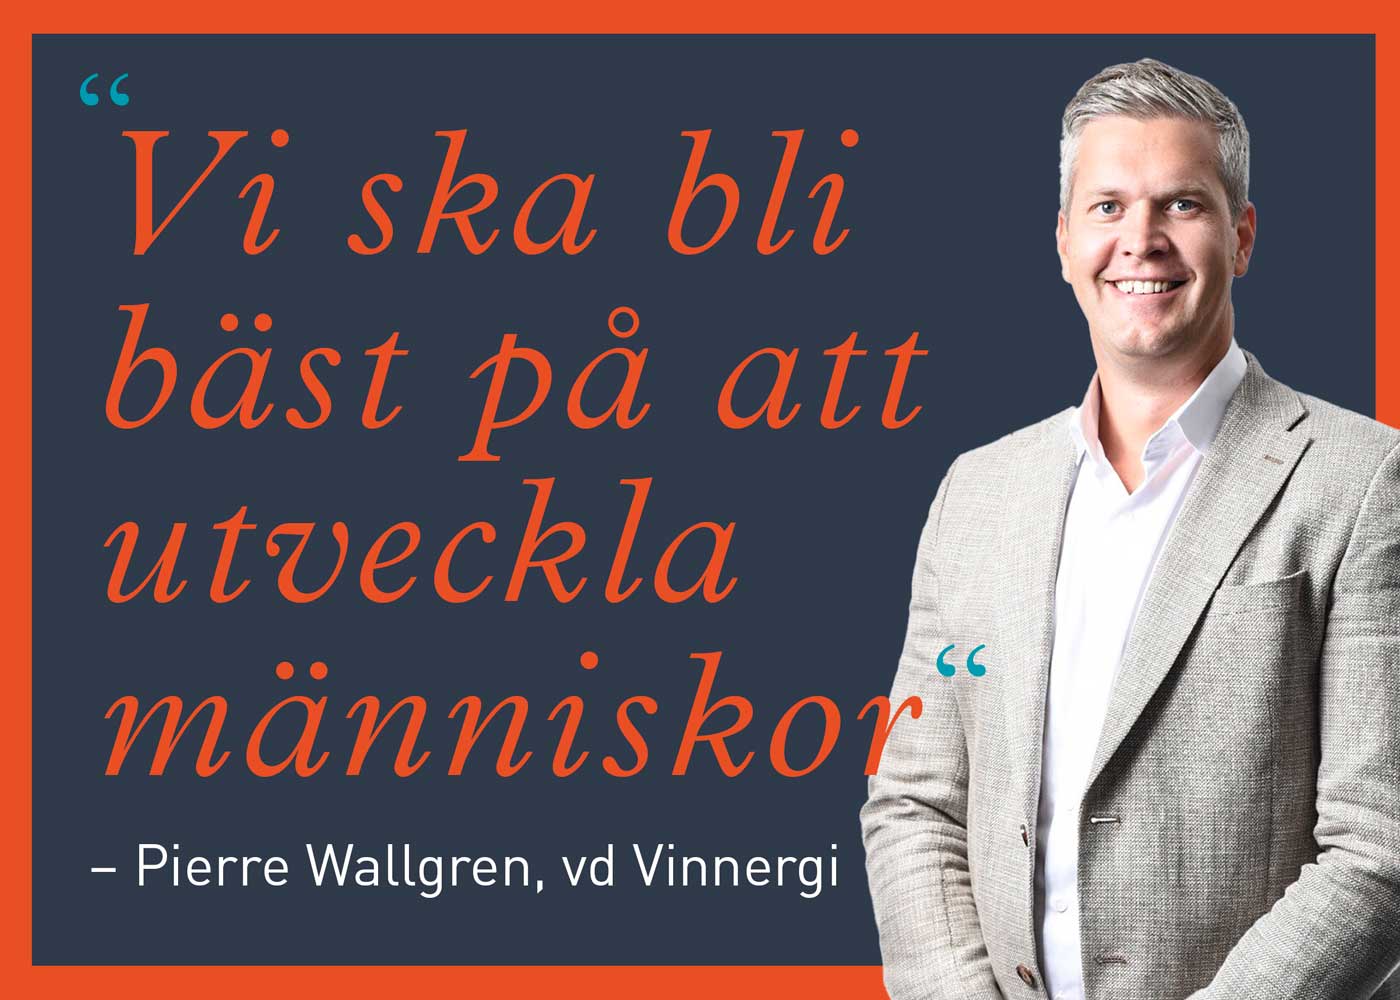 Pierre Wallgren, vd Vinnergi – Vi ska bli bäst på att utveckla människor